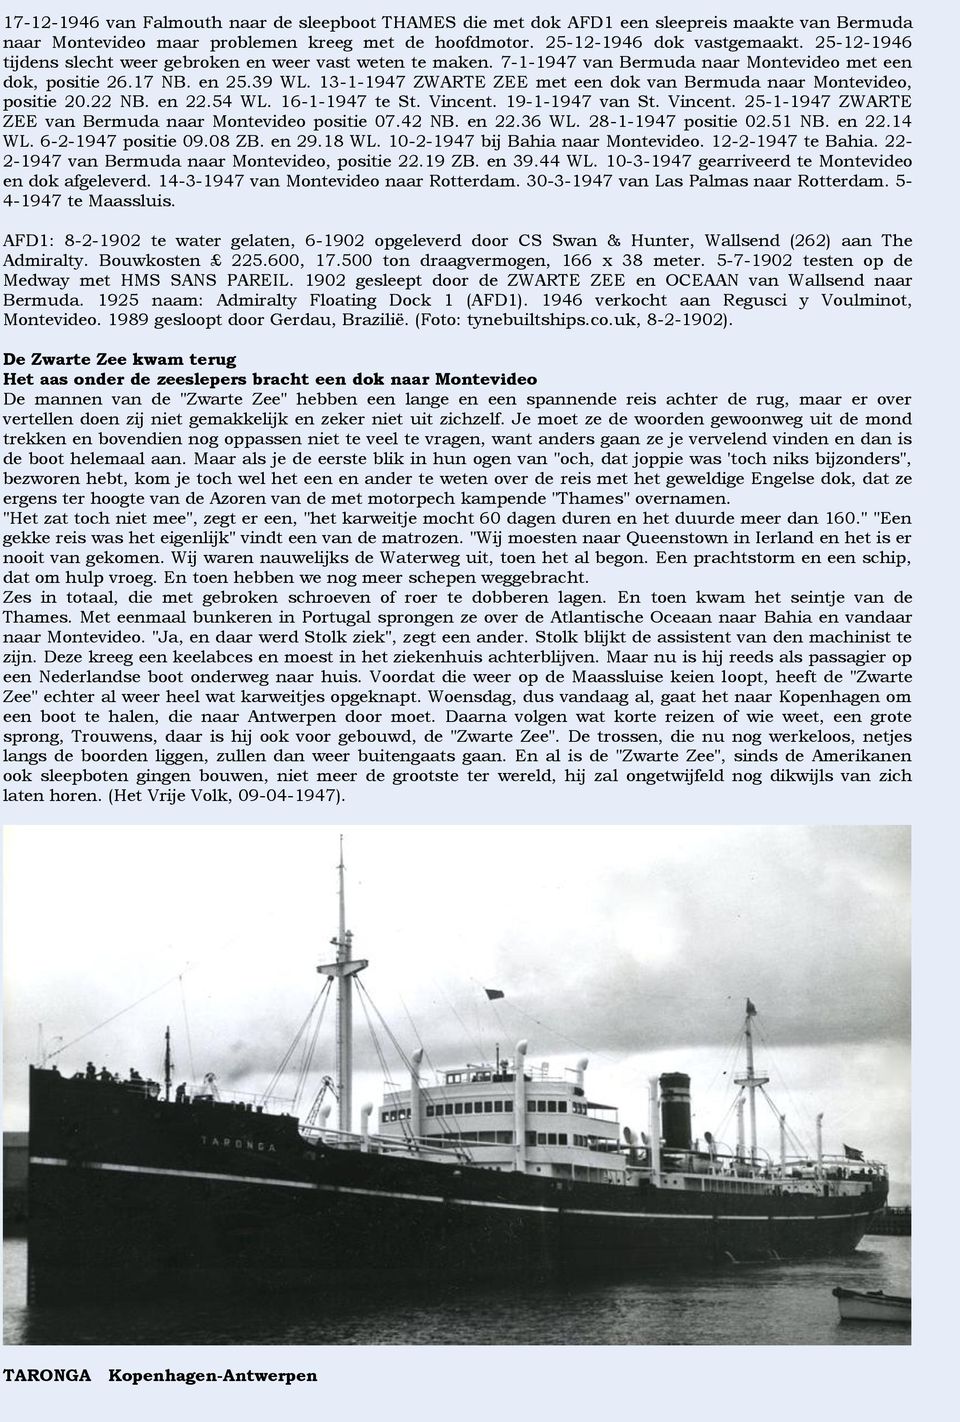 13-1-1947 ZWARTE ZEE met een dok van Bermuda naar Montevideo, positie 20.22 NB. en 22.54 WL. 16-1-1947 te St. Vincent. 19-1-1947 van St. Vincent. 25-1-1947 ZWARTE ZEE van Bermuda naar Montevideo positie 07.